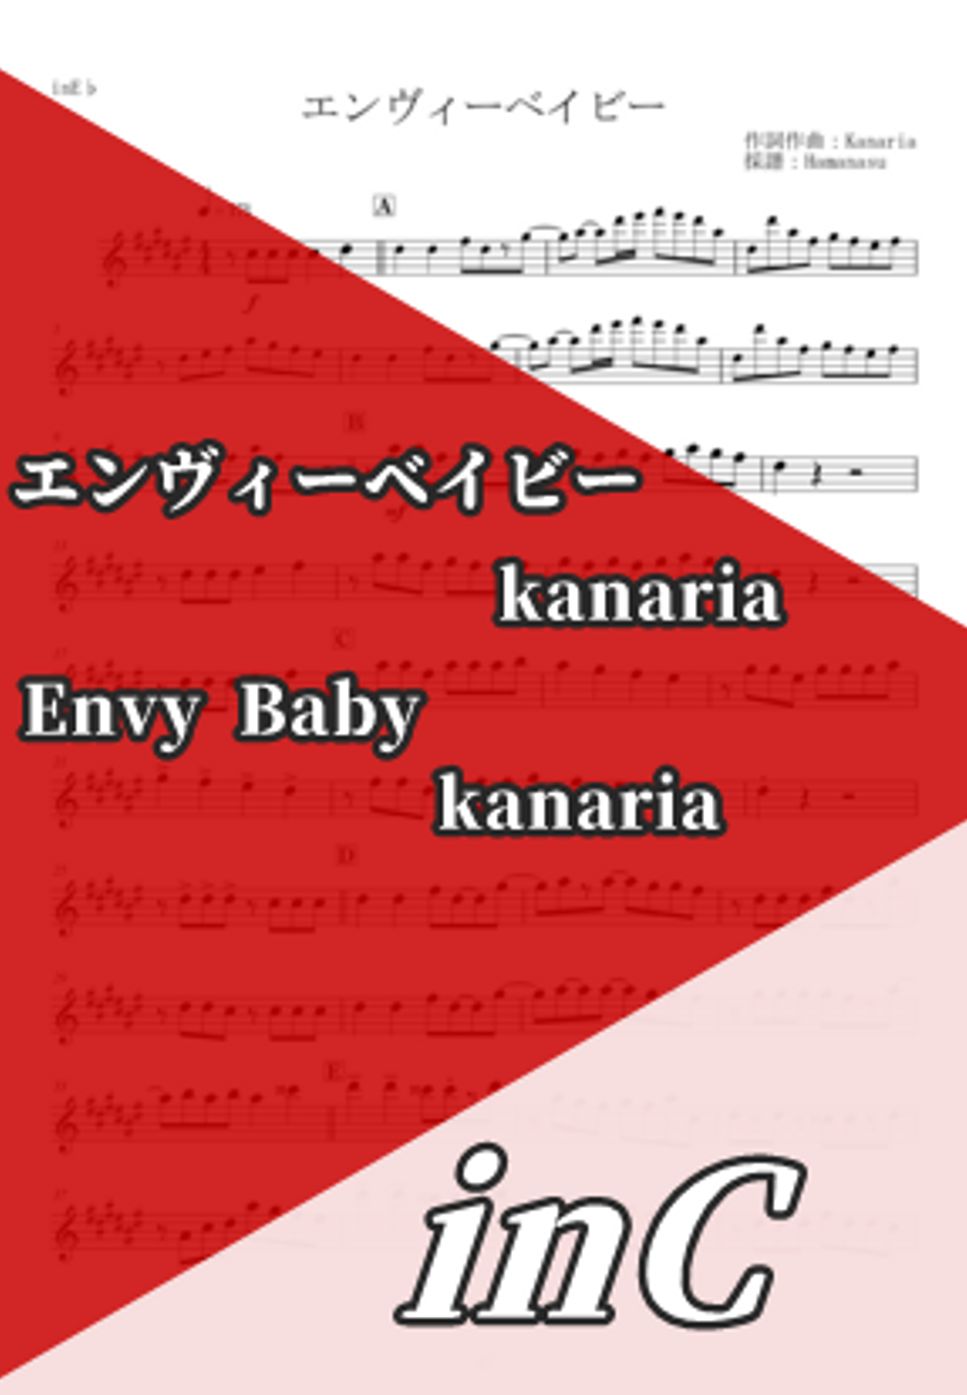 Kanaria - Envy Baby (inC) by Hamanasu